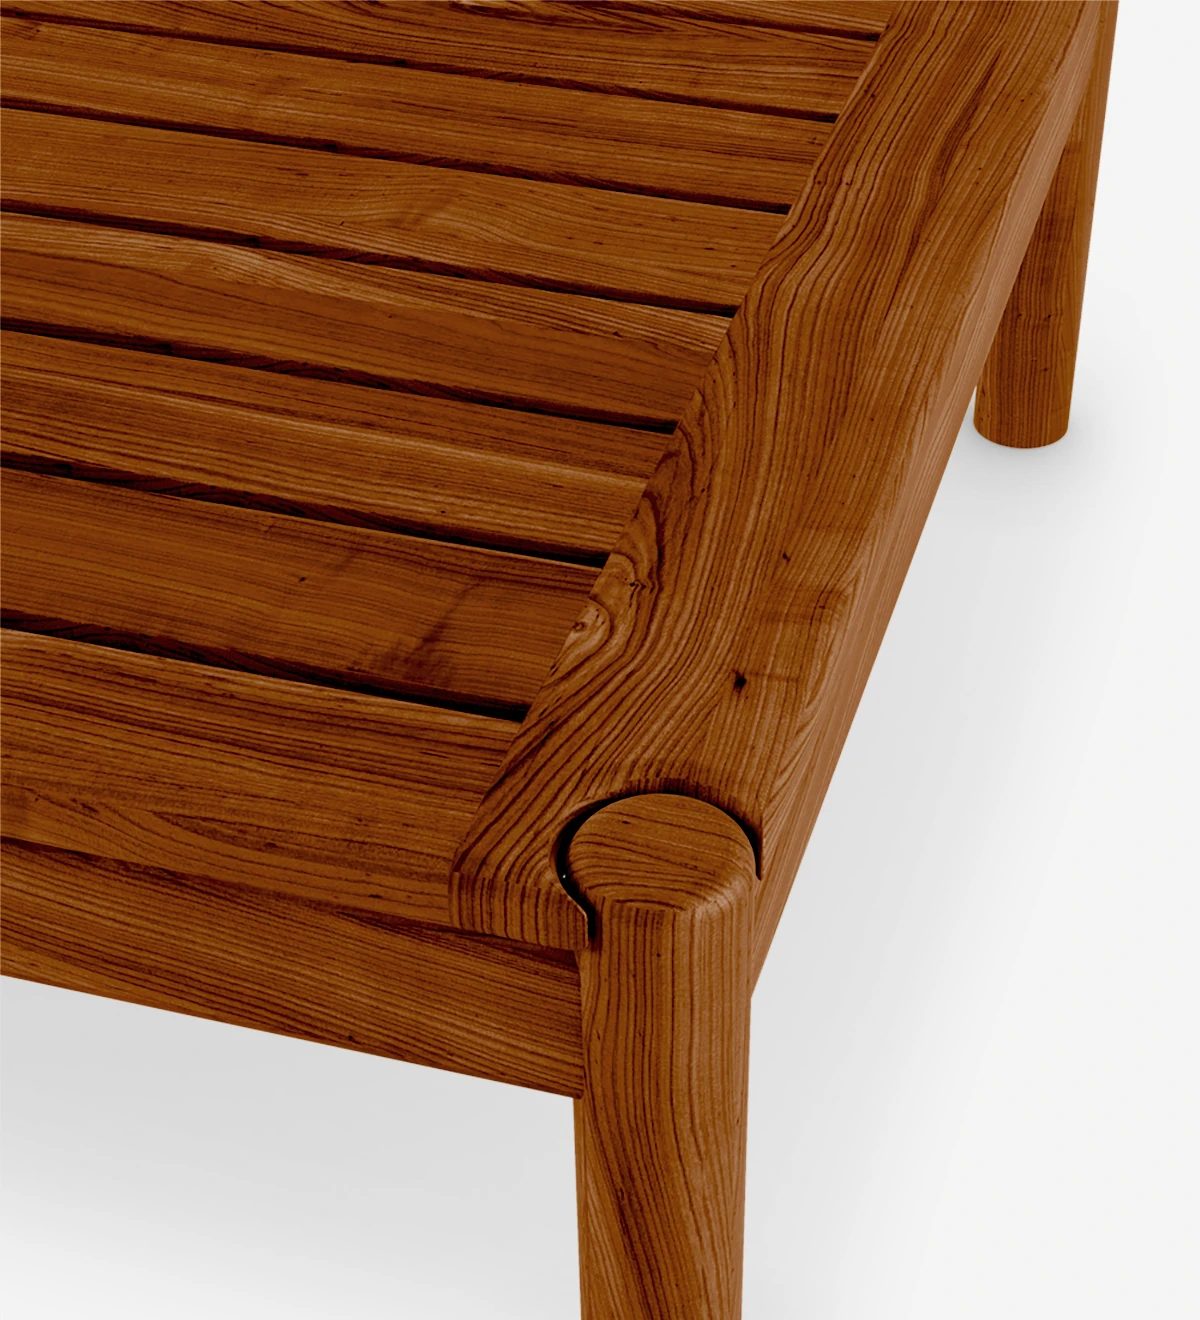 Mesa de centro cuadrada en madera natural color miel.